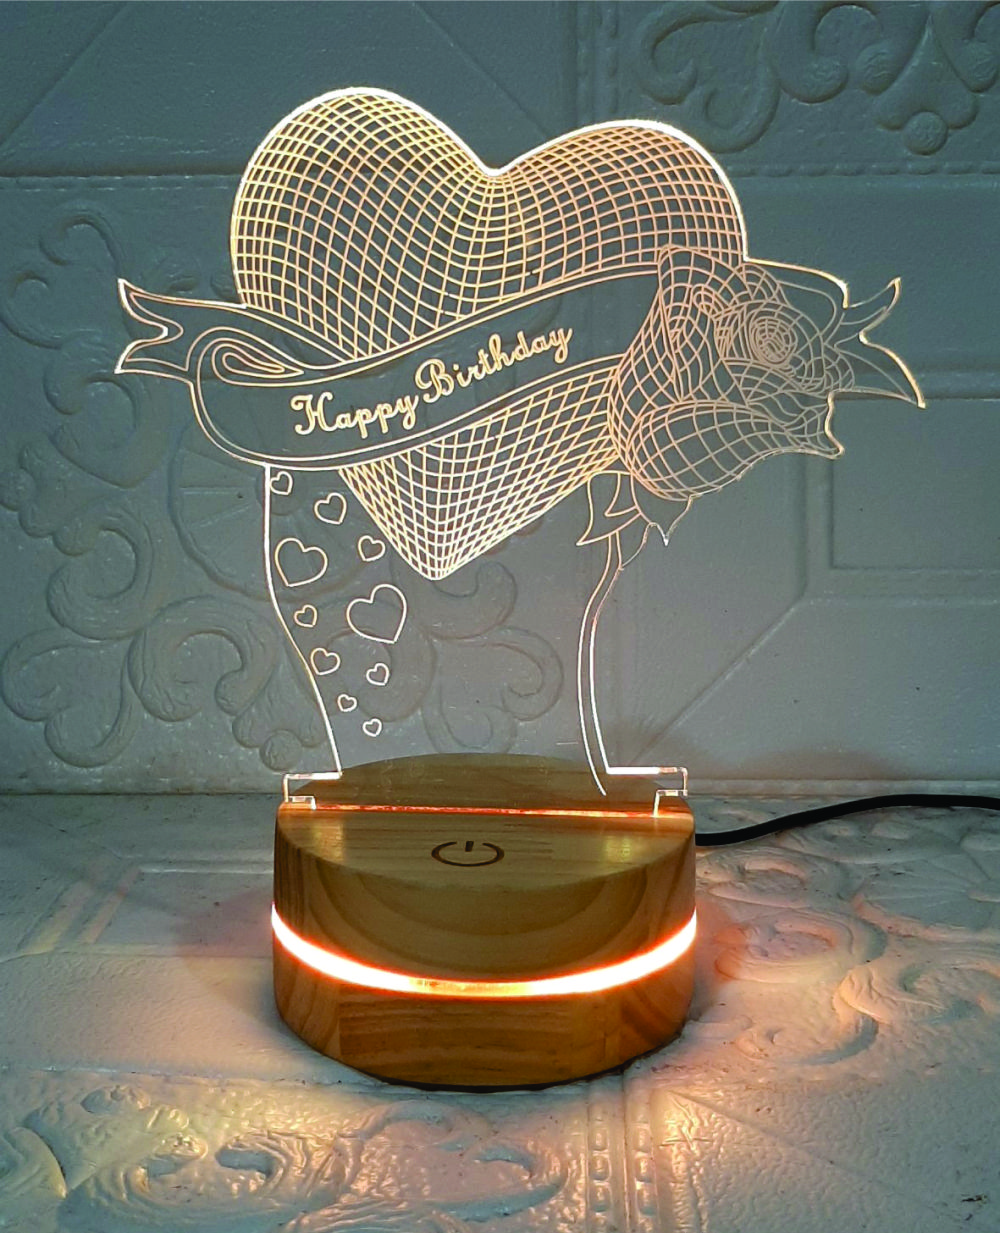 Đèn Happybirthday heart, quà tặng sinh nhật, Đèn Trang trí, đèn 3D led, Đèn ngủ đổi màu, Đèn 16 màu thay đổi, Đế gỗ thân thiện, điều khiển từ xa tiện lợi, Quà tặng ý nghĩa, quà lưu niệm, thiết bị chiếu sáng nhà cửa, bàn làm việc